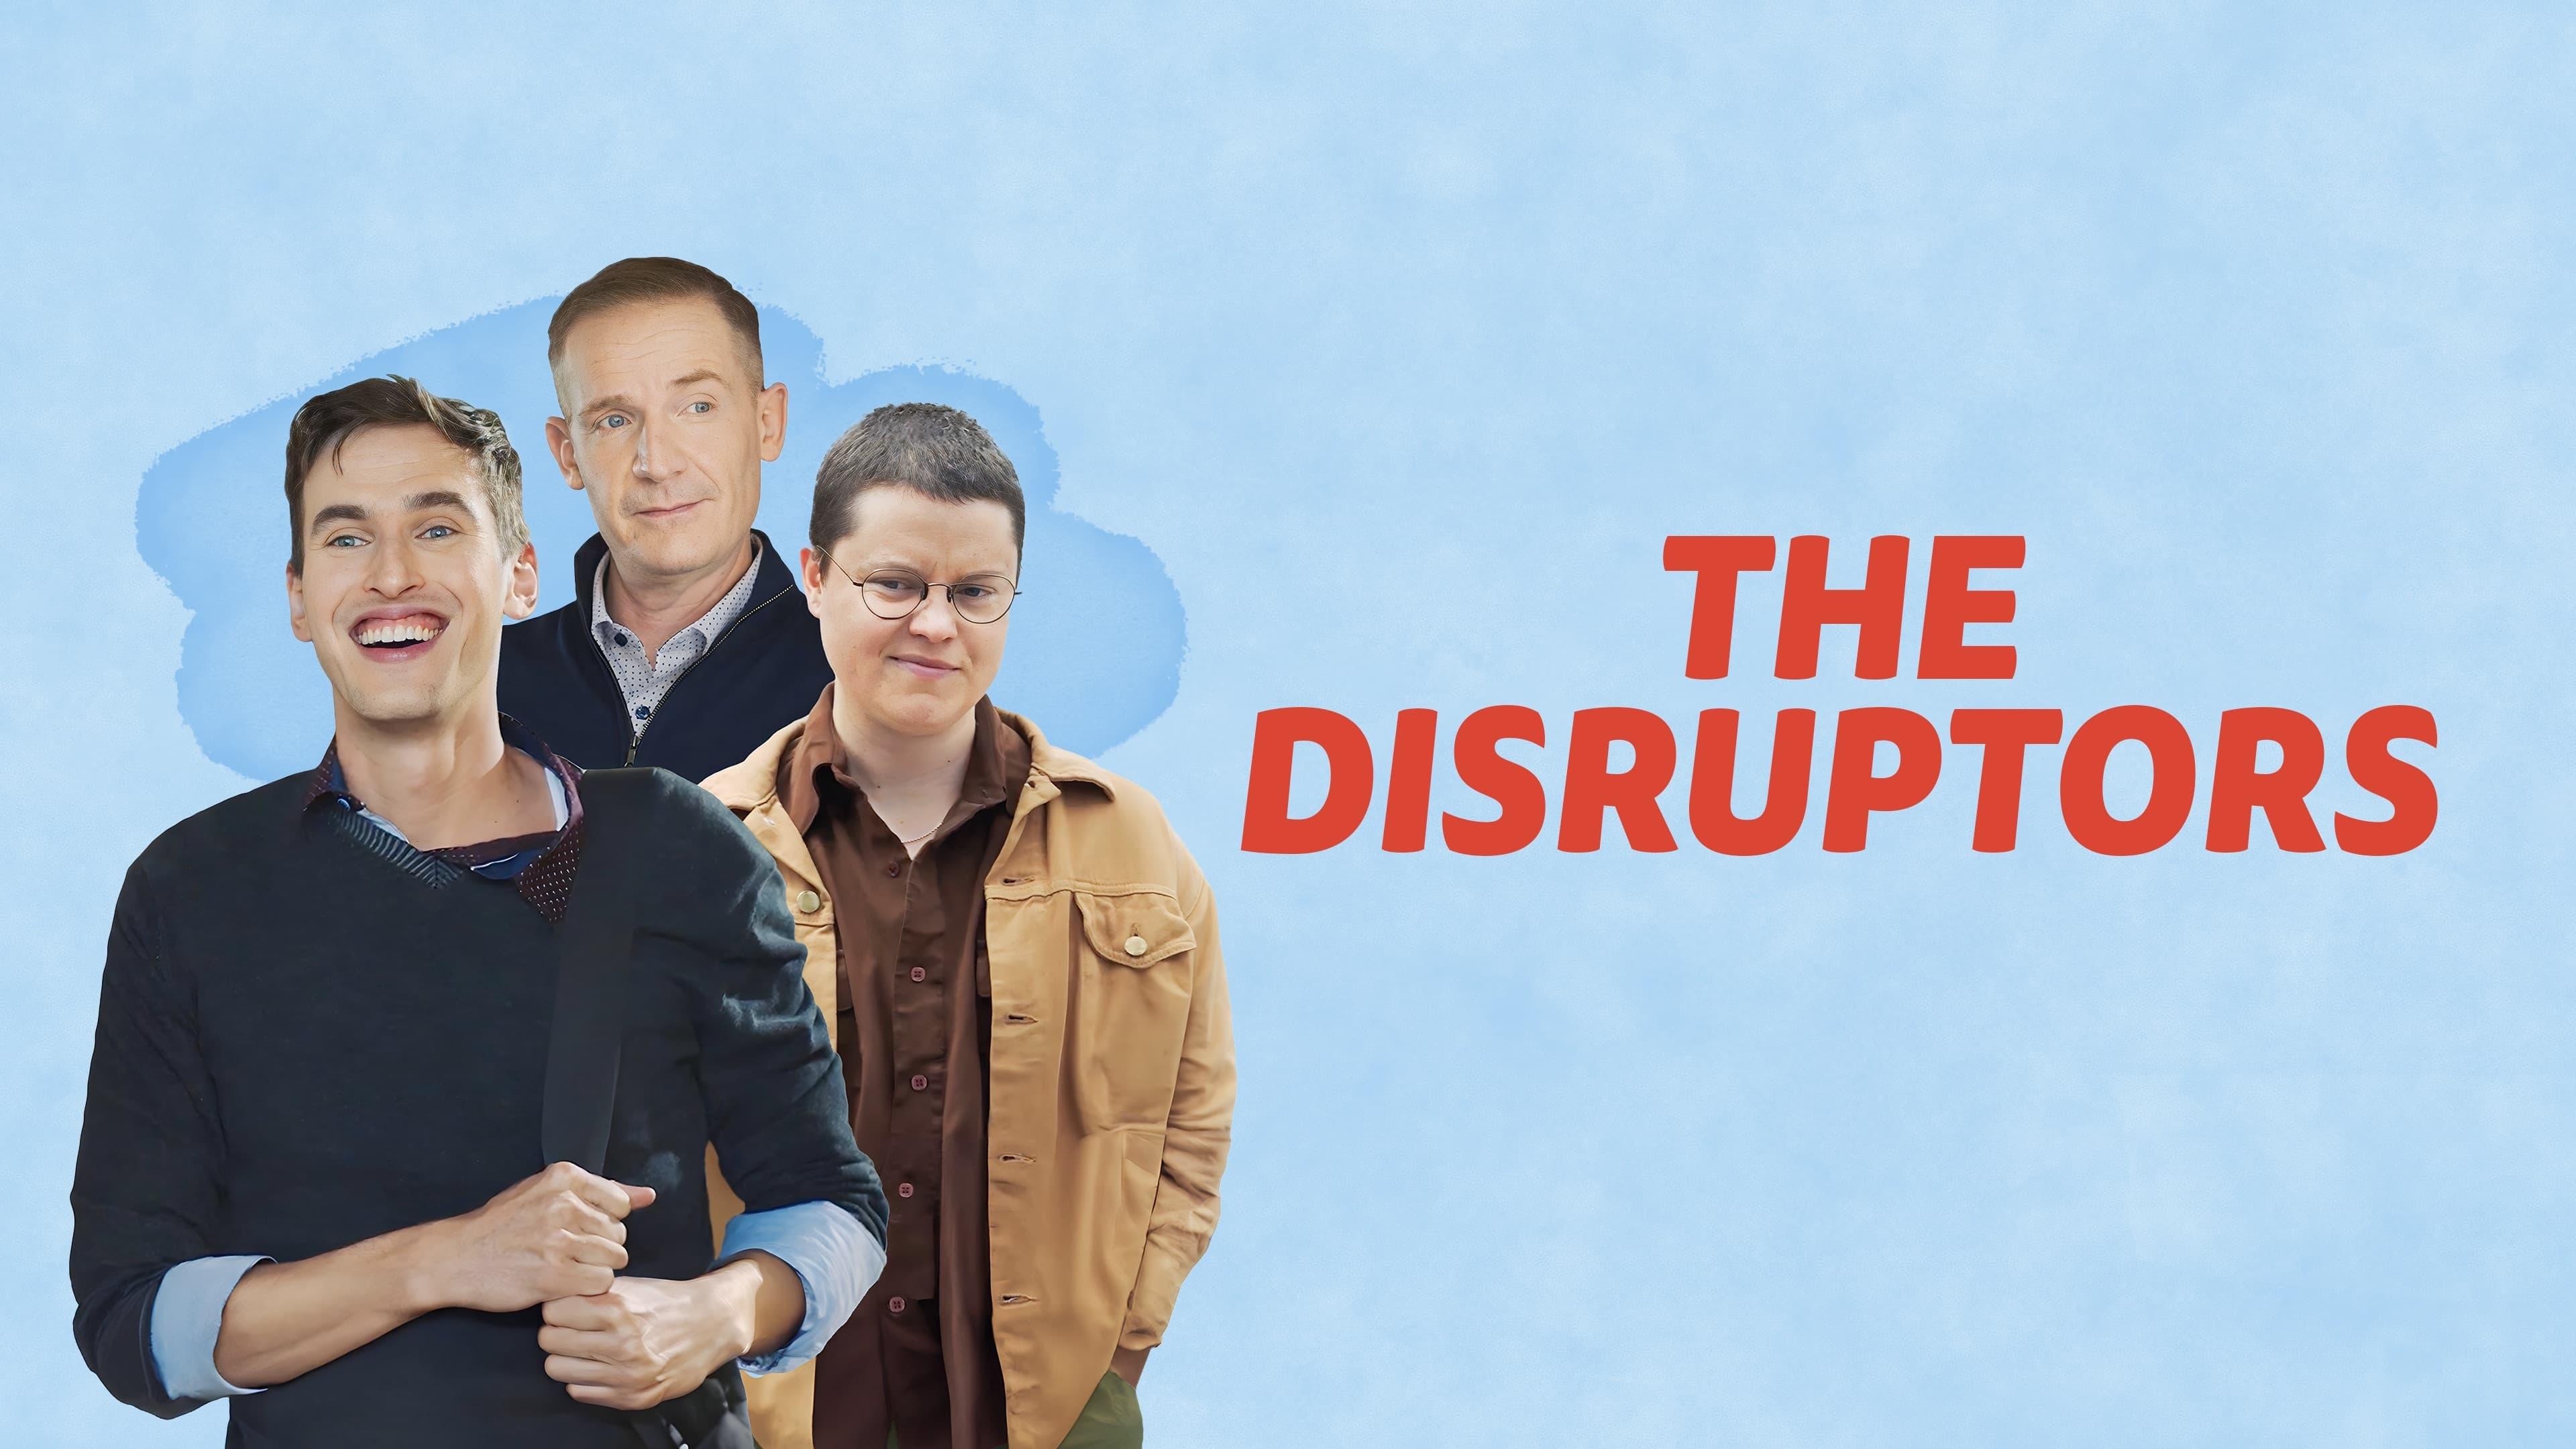 The Disruptors backdrop